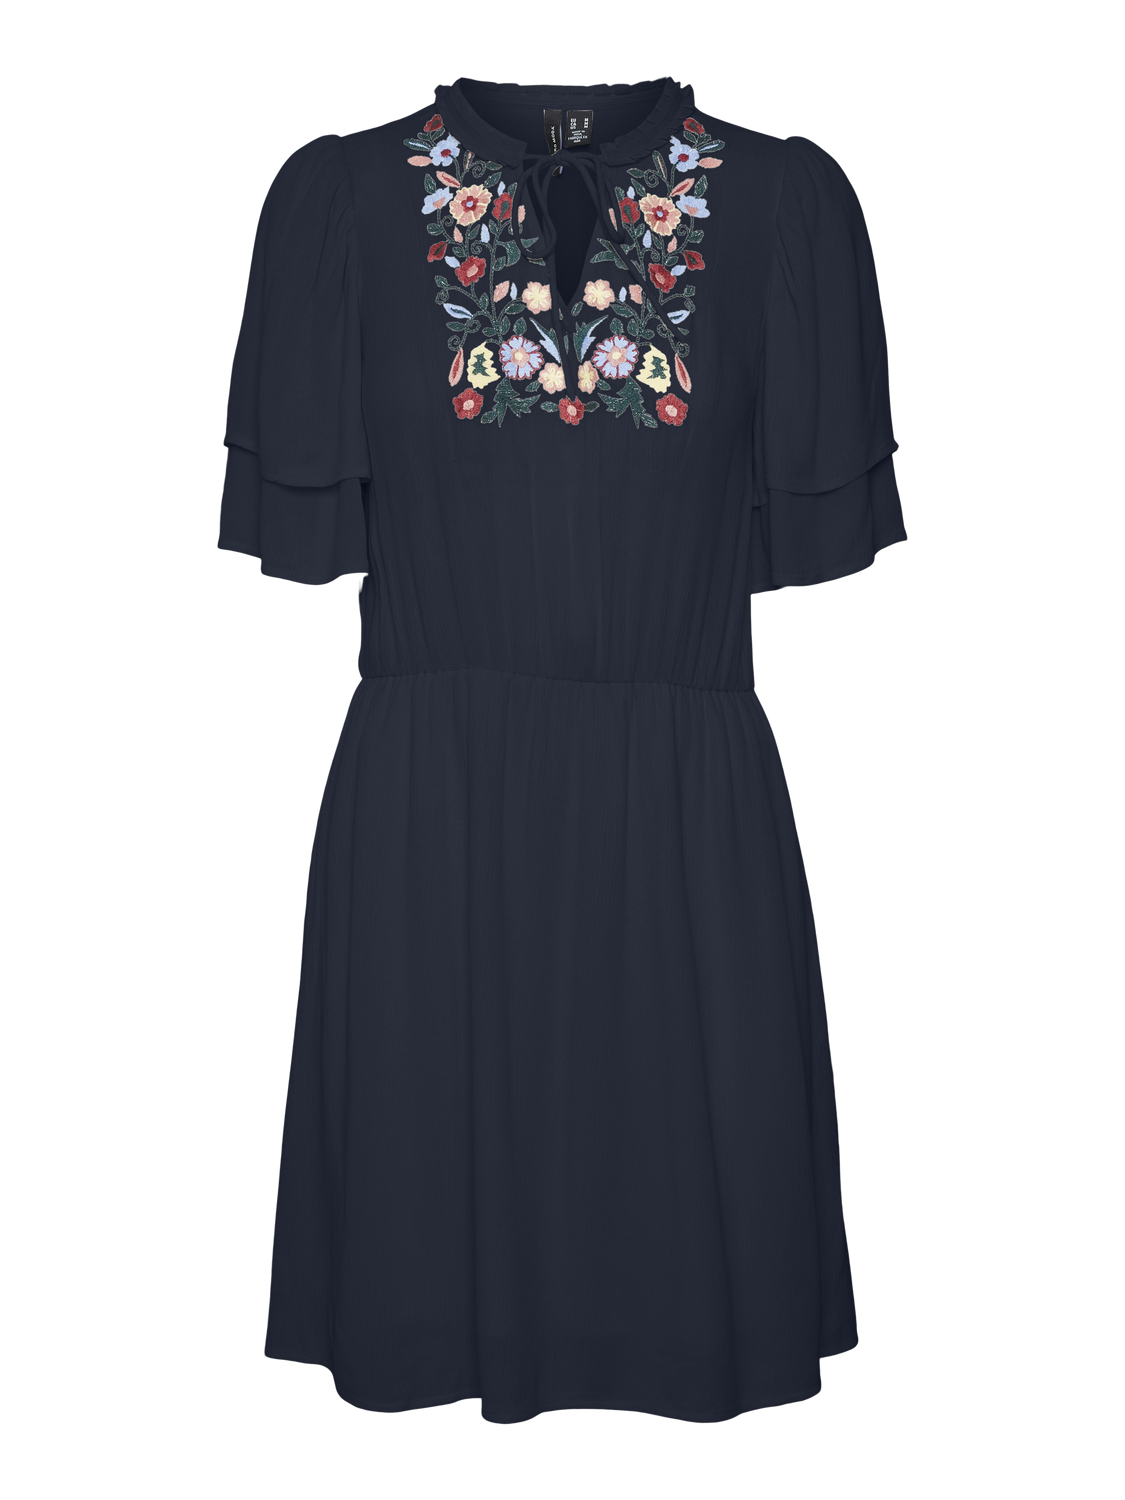 Vero Moda VMSINA Kort kjole -Navy Blazer - 10314161